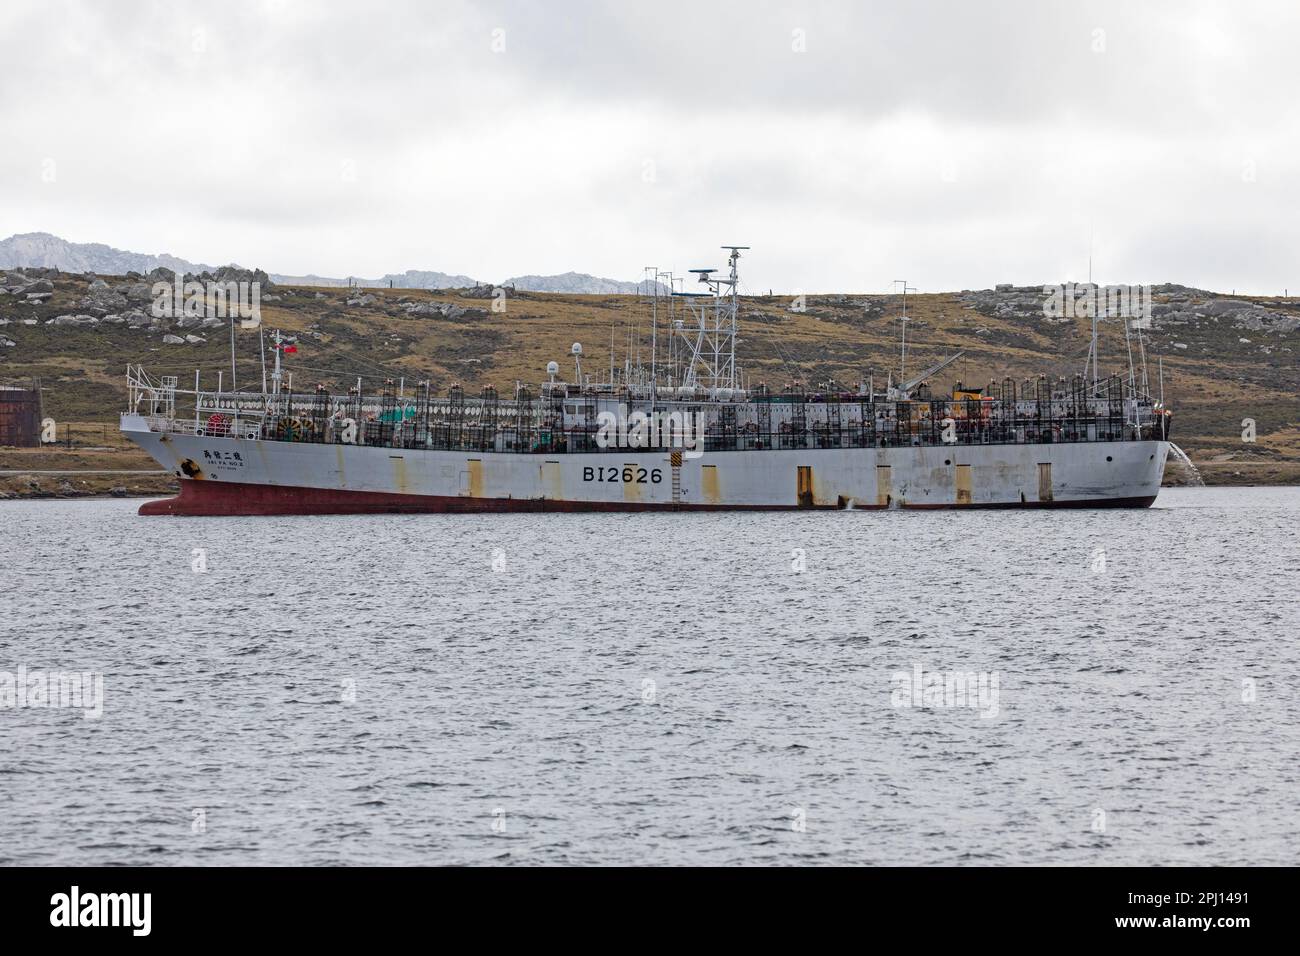 Barca da pesca Jai fa N0,2, navigando sotto la bandiera di Taiwan, e costruito nel 2013, nel porto di Stanley, Isole Falkland. Foto Stock